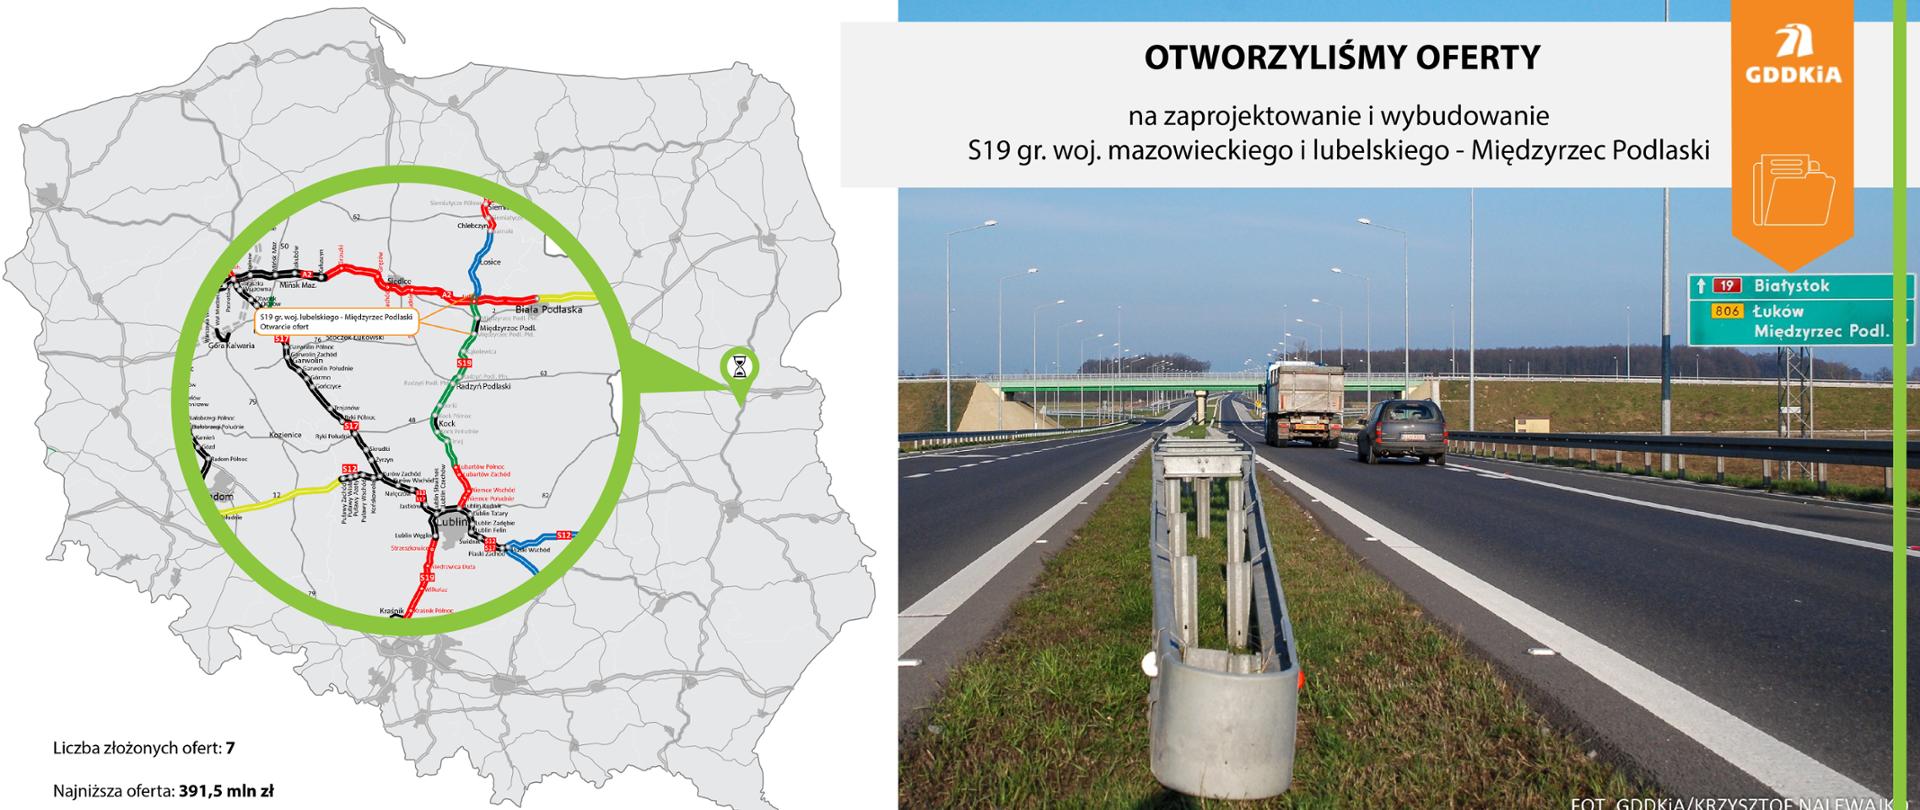 Infografika informująca o otwarciu ofert na zaprojektowanie i budowę drogi ekspresowej S19 na odcinku granica województwa mazowieckiego i lubelskiego - Międzyrzec Podlaski. Po lewej mapa Polski z zaznaczonym odcinkiem drogi S19. Po prawej zdjęcie drogi S19. Widoczne dwie jezdnie ekspresówki przechodzące pod wiaduktem.